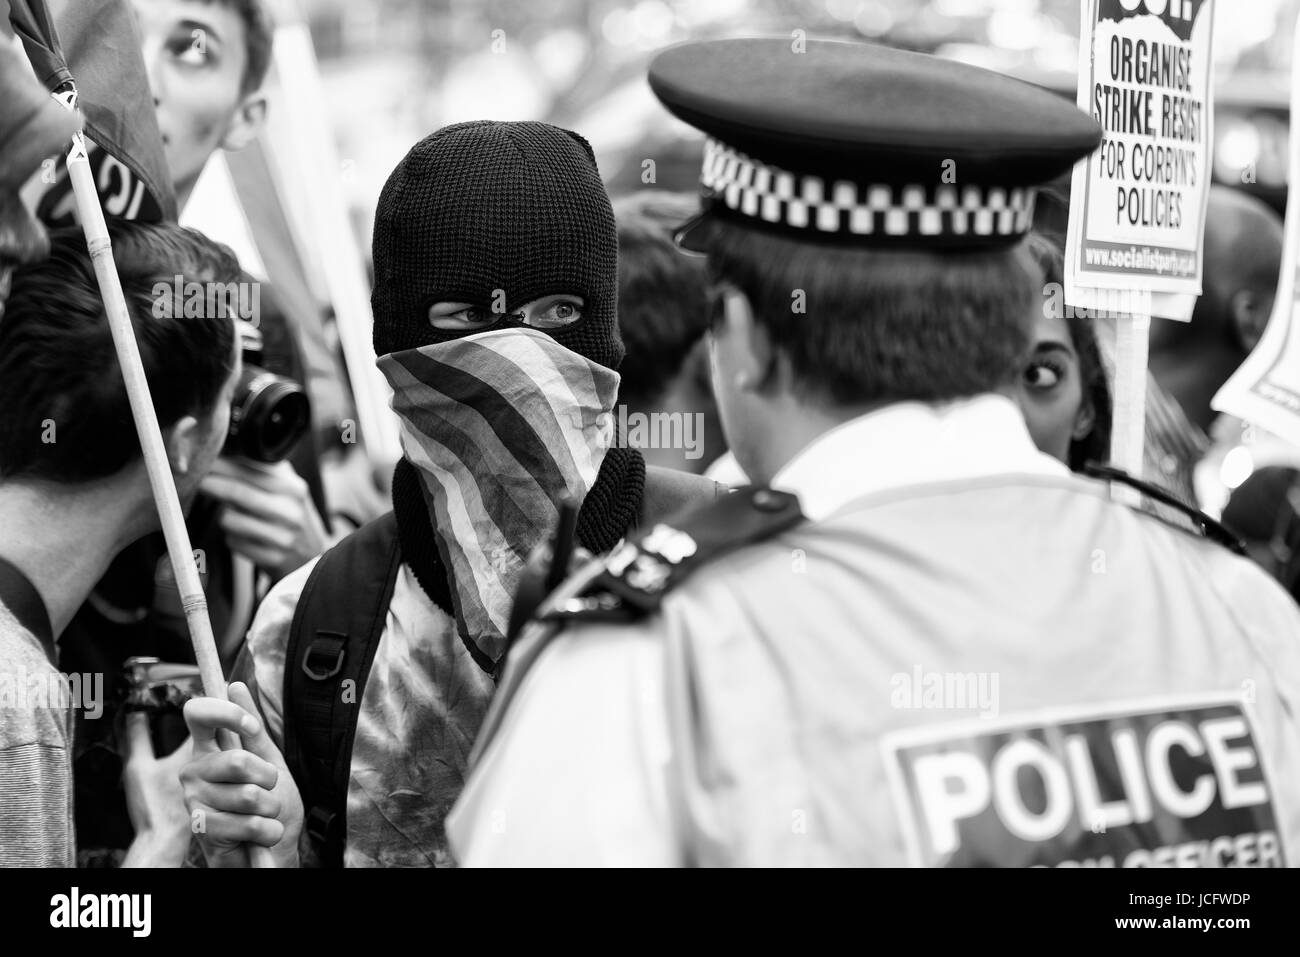 Demonstranten in Whitehall außerhalb der Downing Street in Konfrontationsstimmung. Schwarzweiß. Schwarzweiß Stockfoto